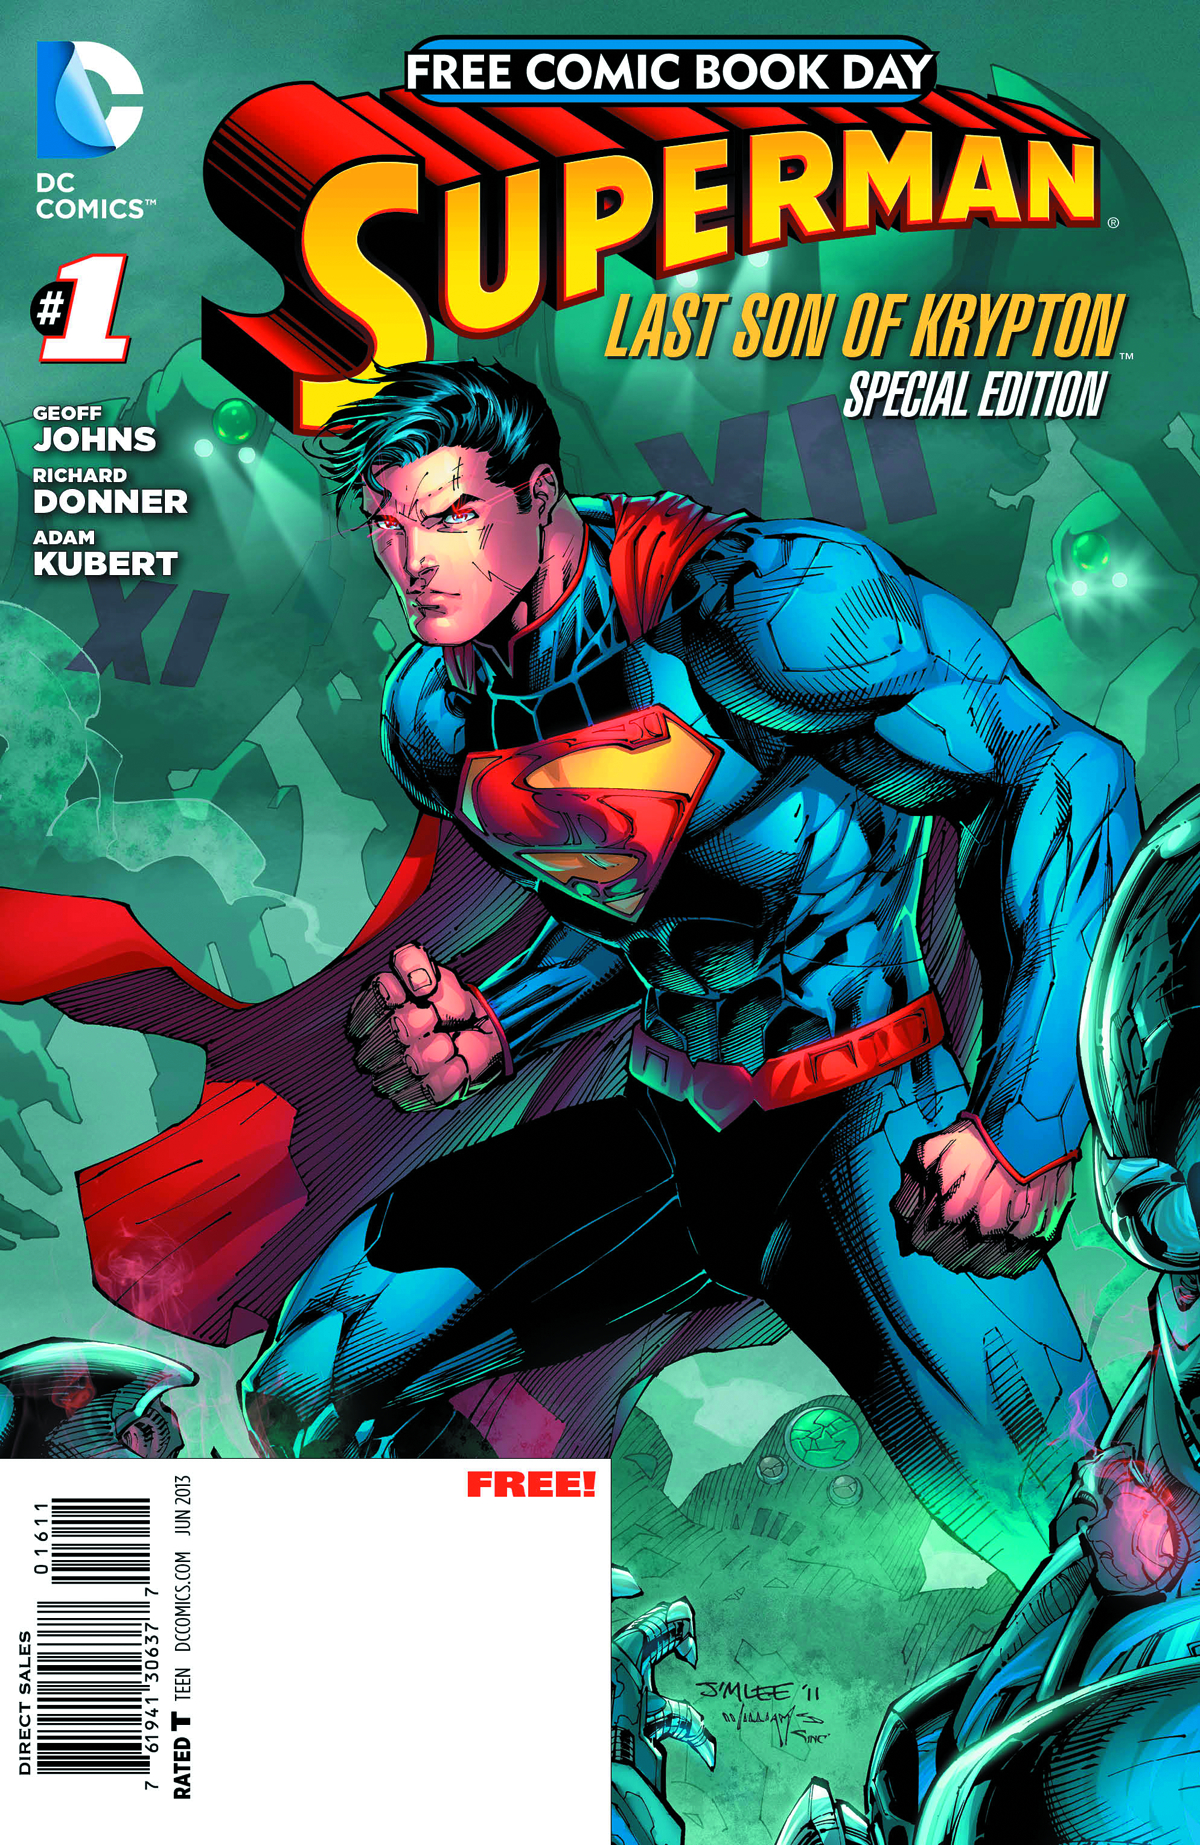 FCBD 2013 SUPERMAN SPECIAL EDITION